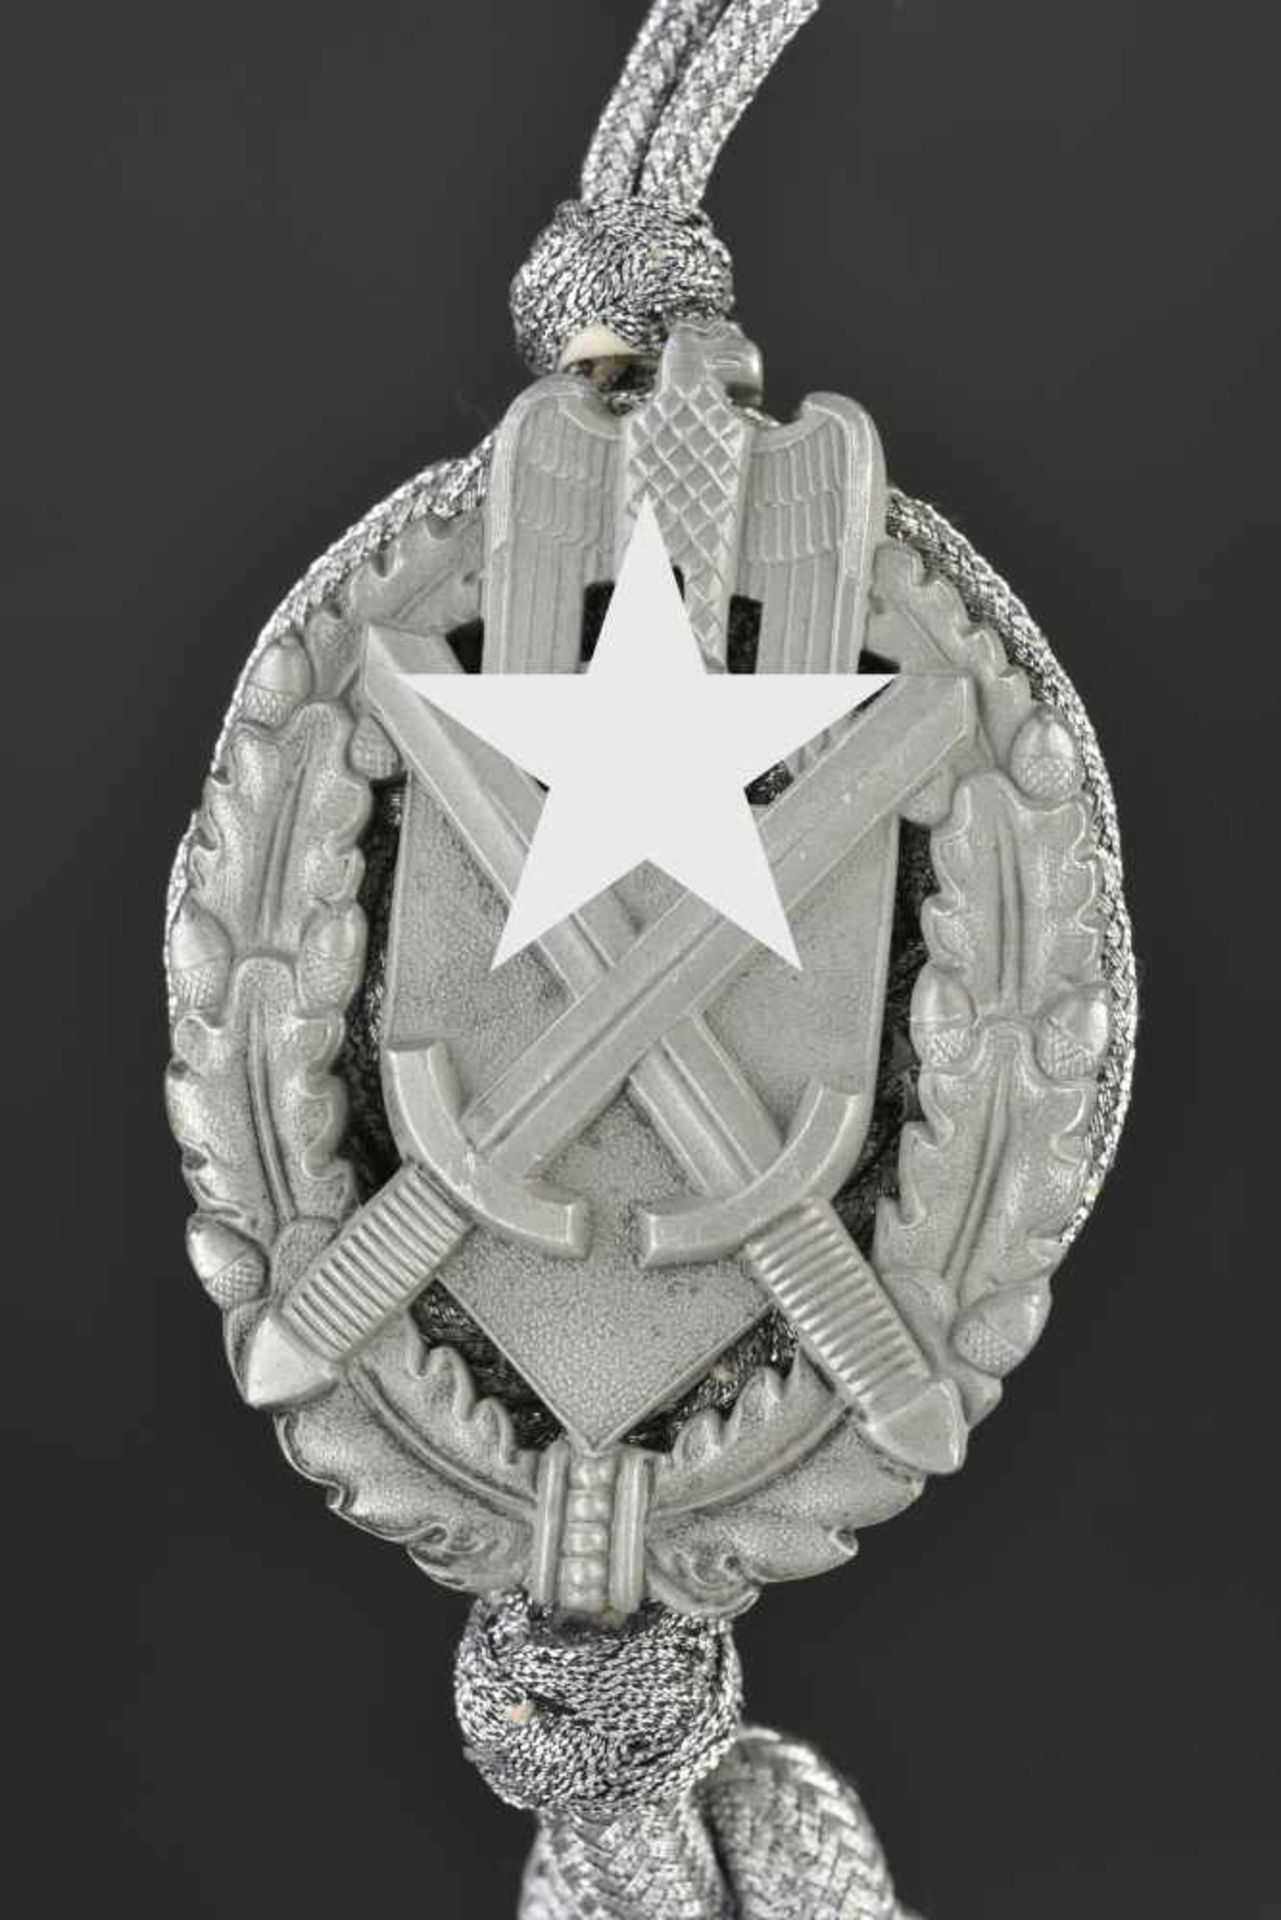 Cordon de tireur En fils argentés, badge présent et complet. Second modèle, troisième classe. Neuf - Image 2 of 3